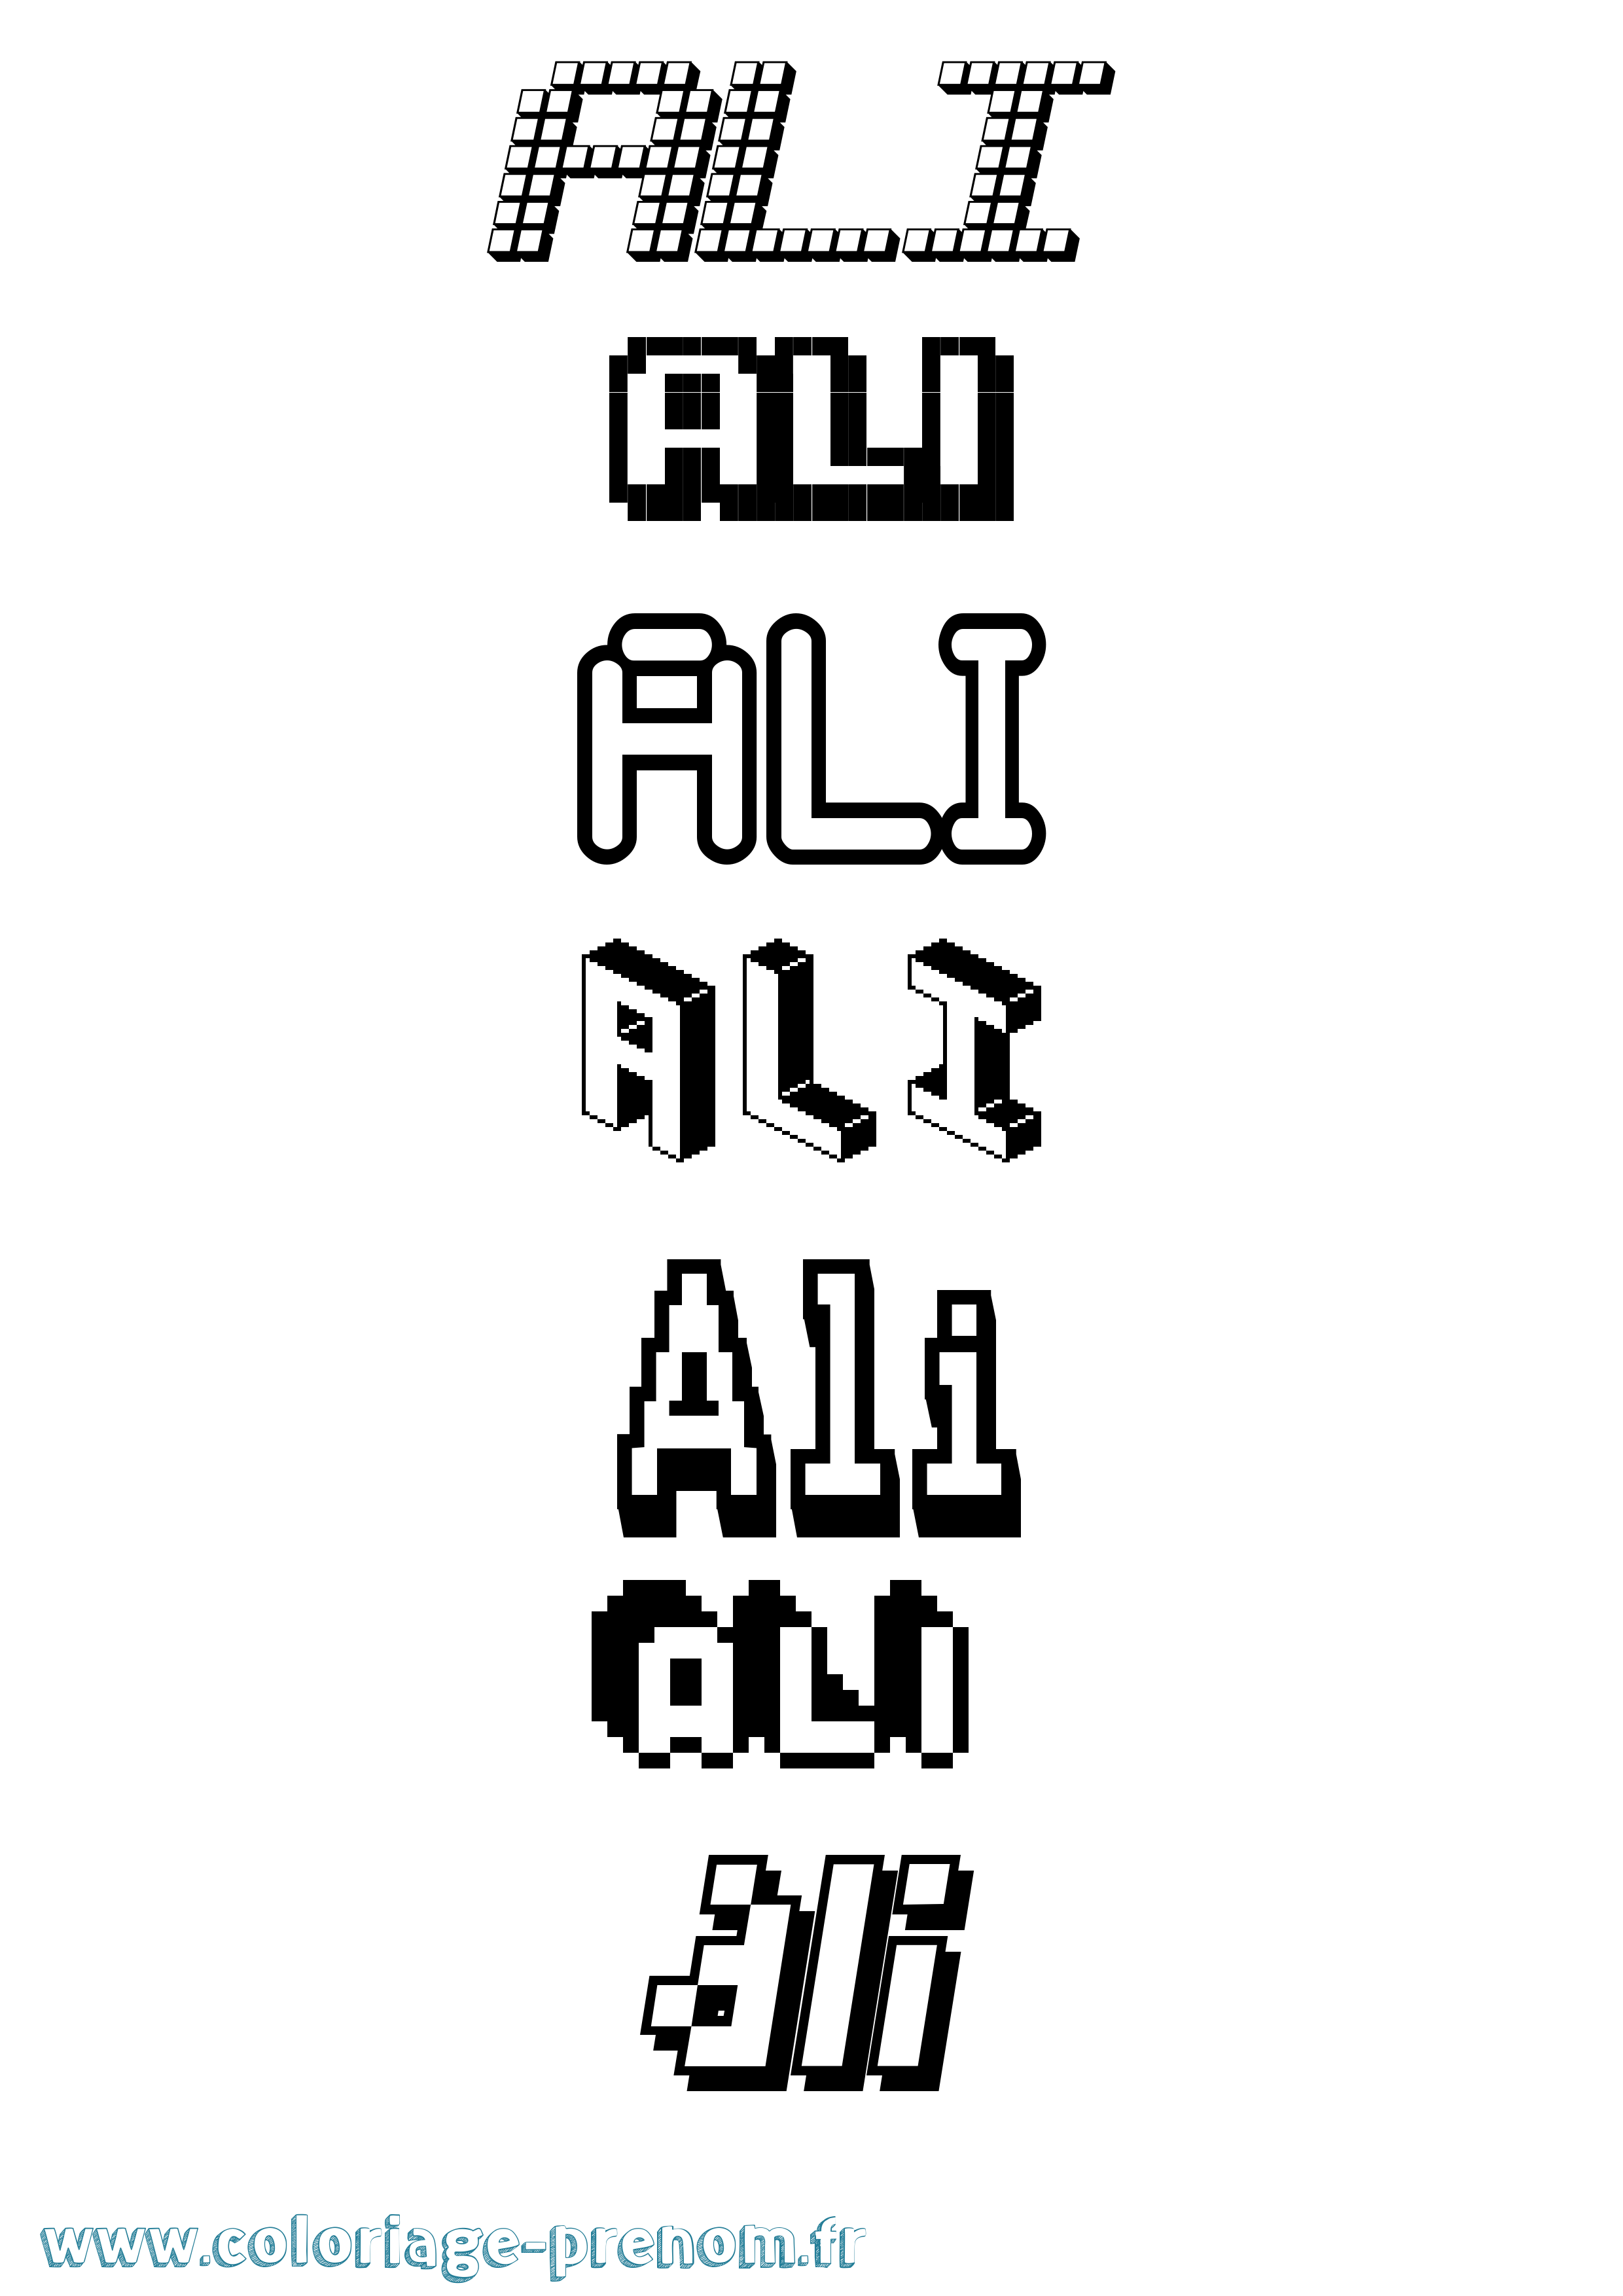 Coloriage prénom Ali Pixel